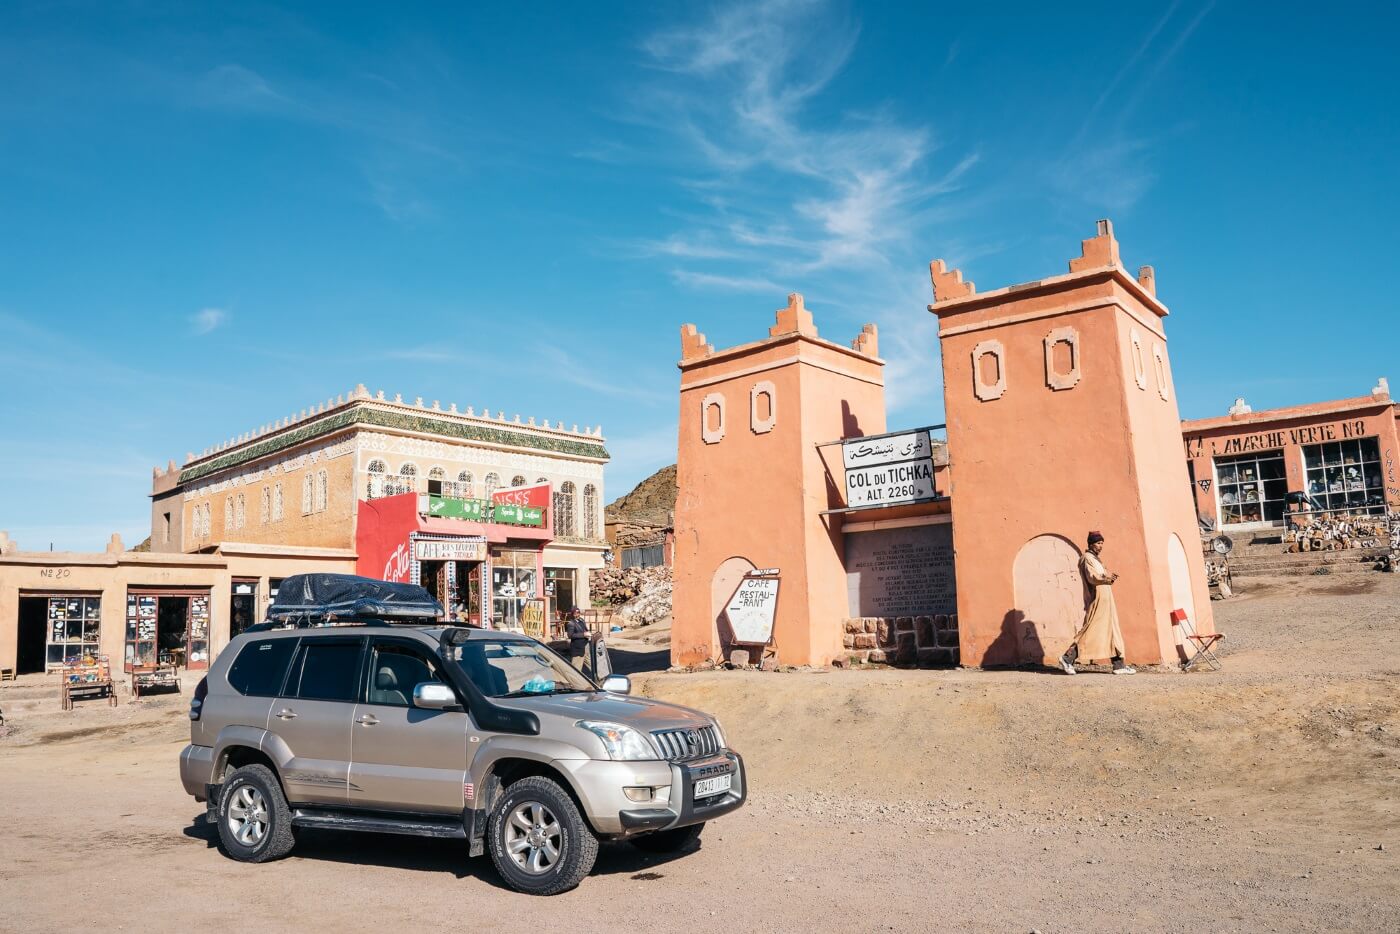 Dwaal fort ik ben verdwaald Tips auto huren in Marokko. | Wereldreizigersclub